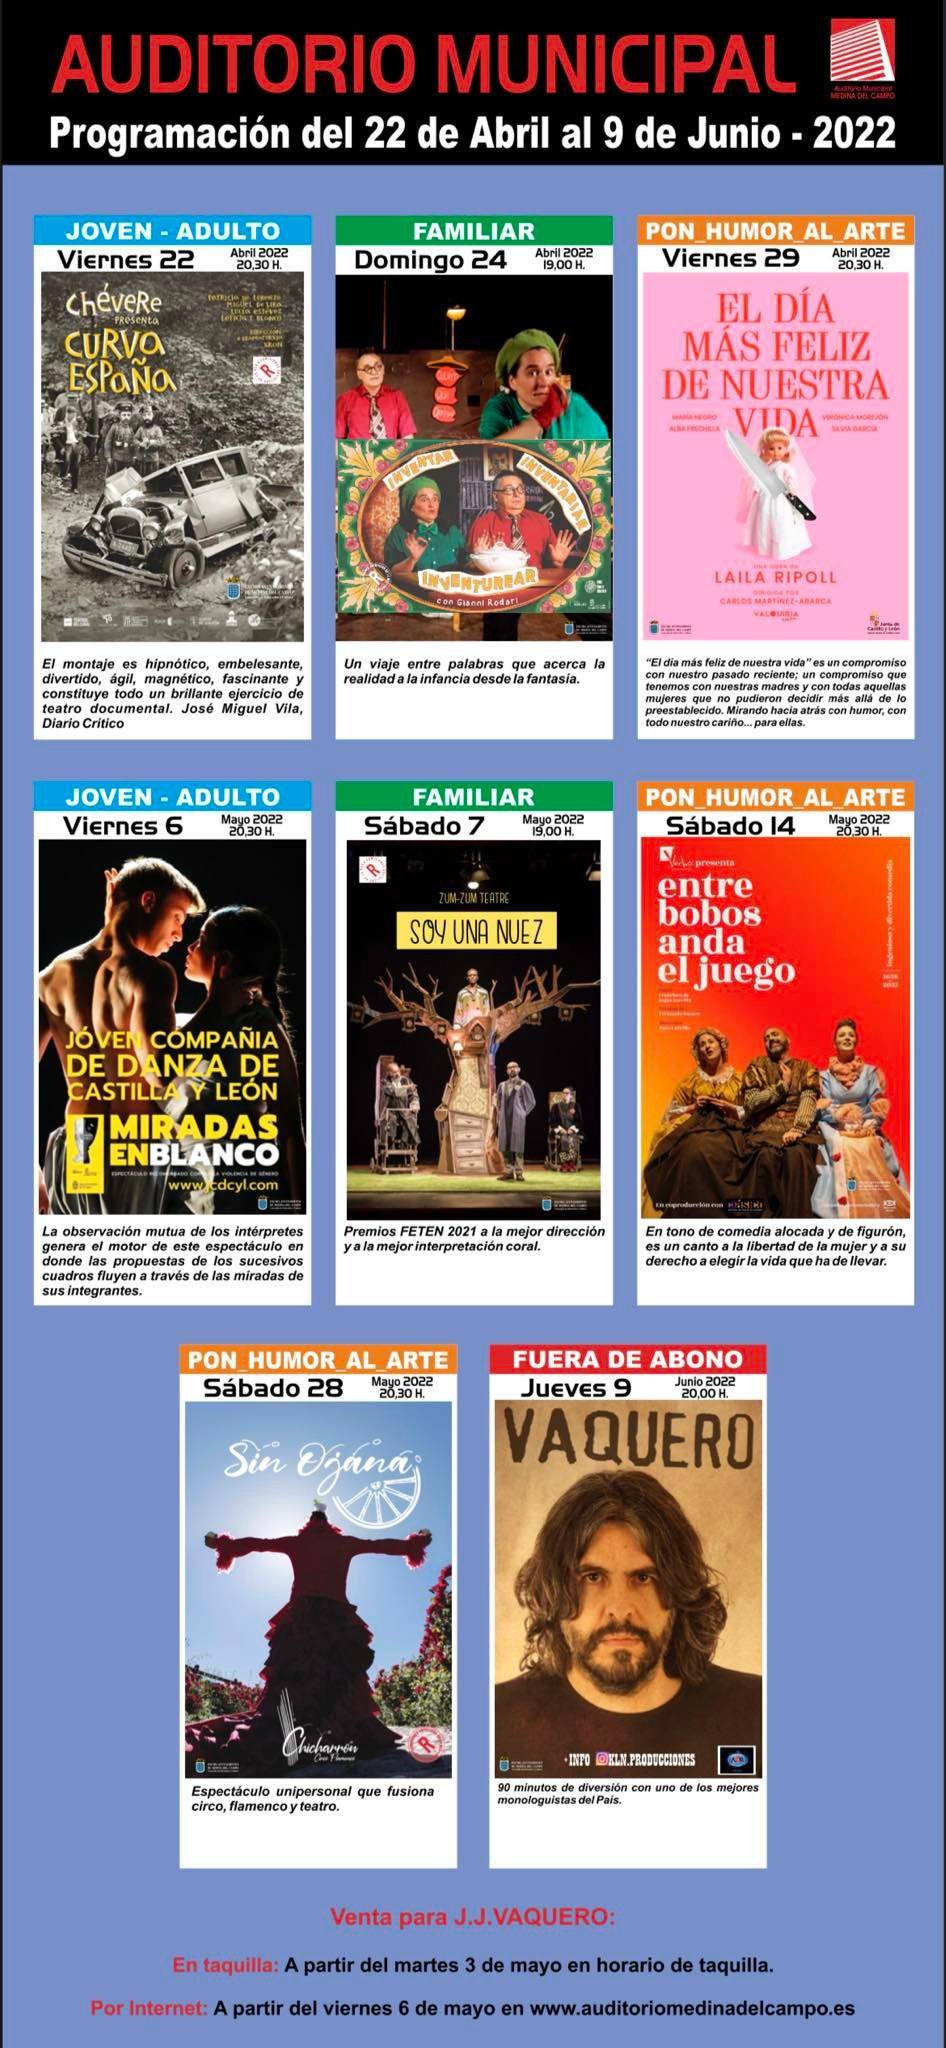 PROGRAMACIÓN de ARTES ESCÉNICAS durante el primer semestre del año 2022 en el Auditorio Municipal de Medina del Campo (REGRESAMOS)